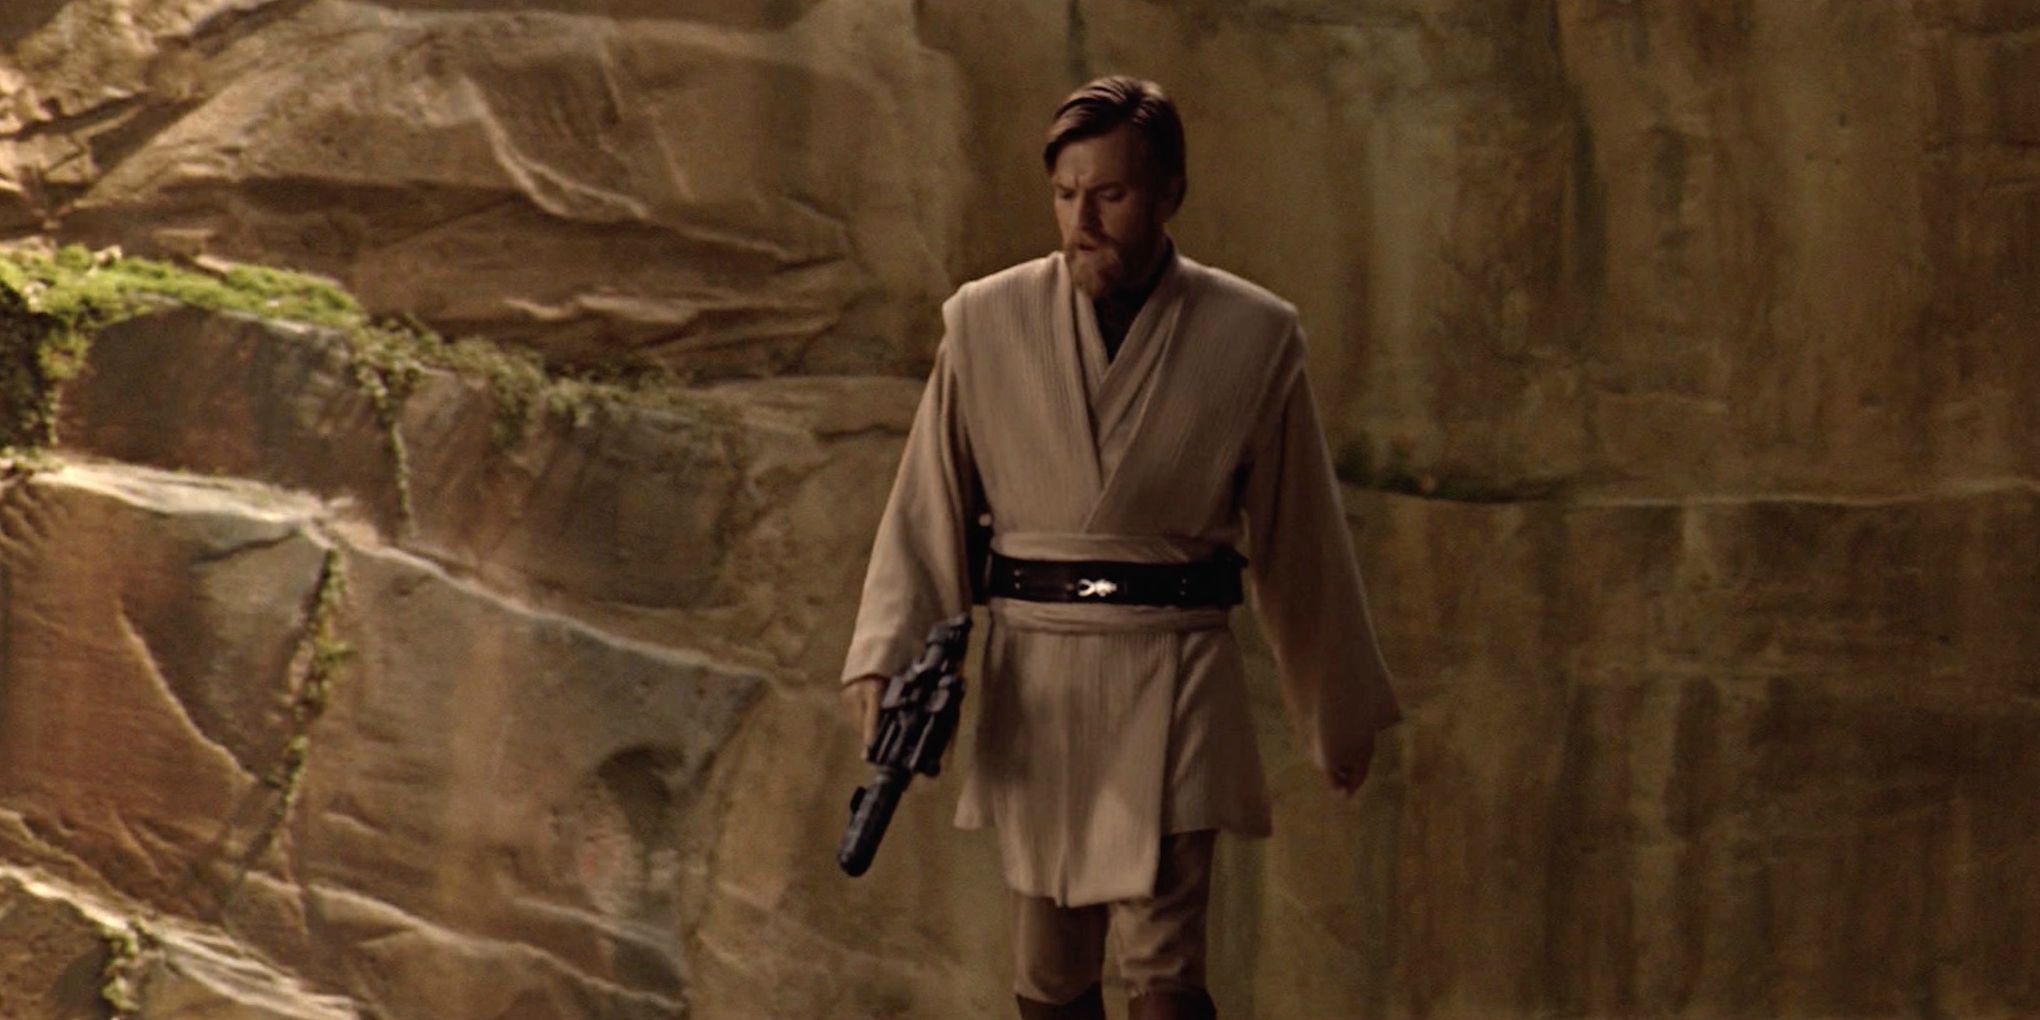 Ewan McGregor as Obi Wan Kenobi in Revenge of the Sith